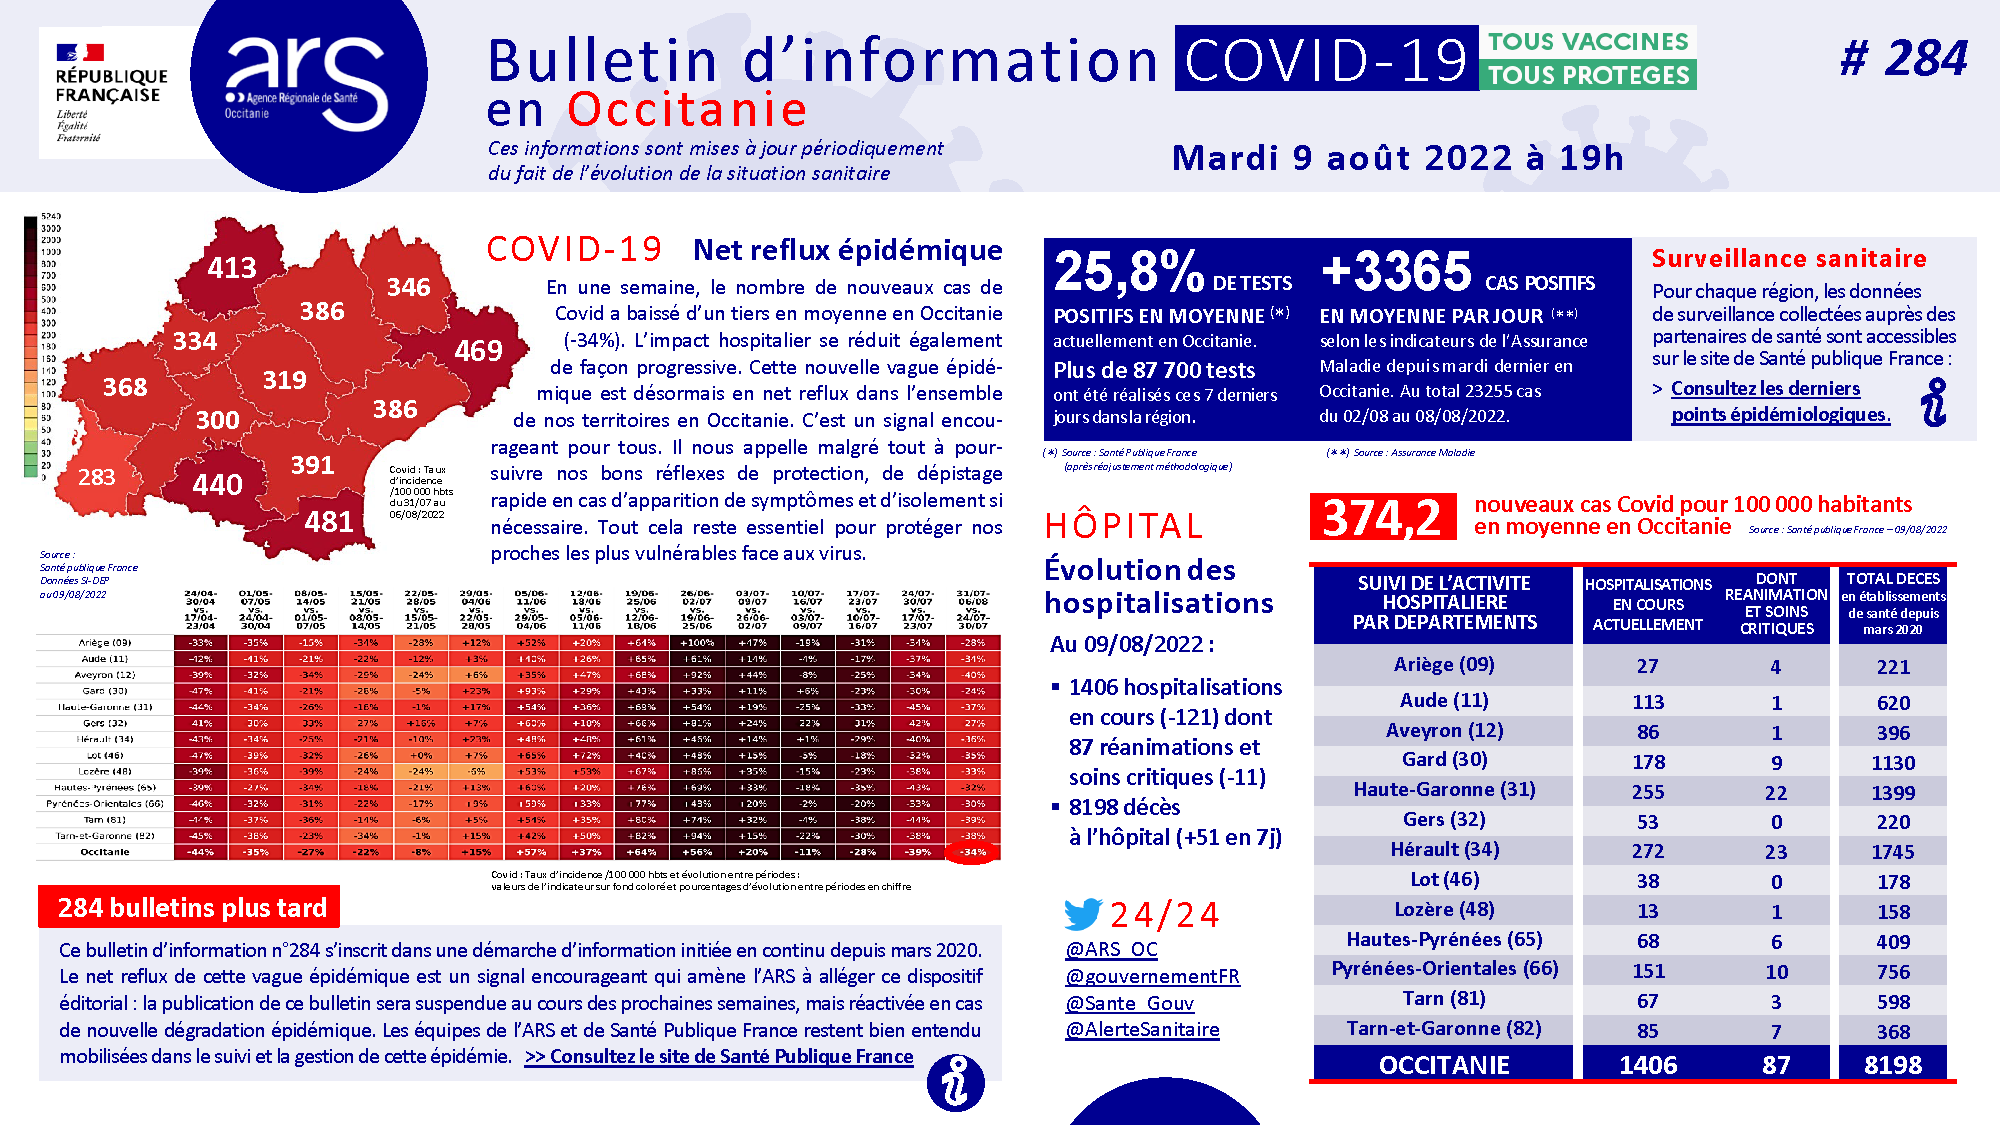 #COVID19. Bulletin d'information #284 du 09/08/2022